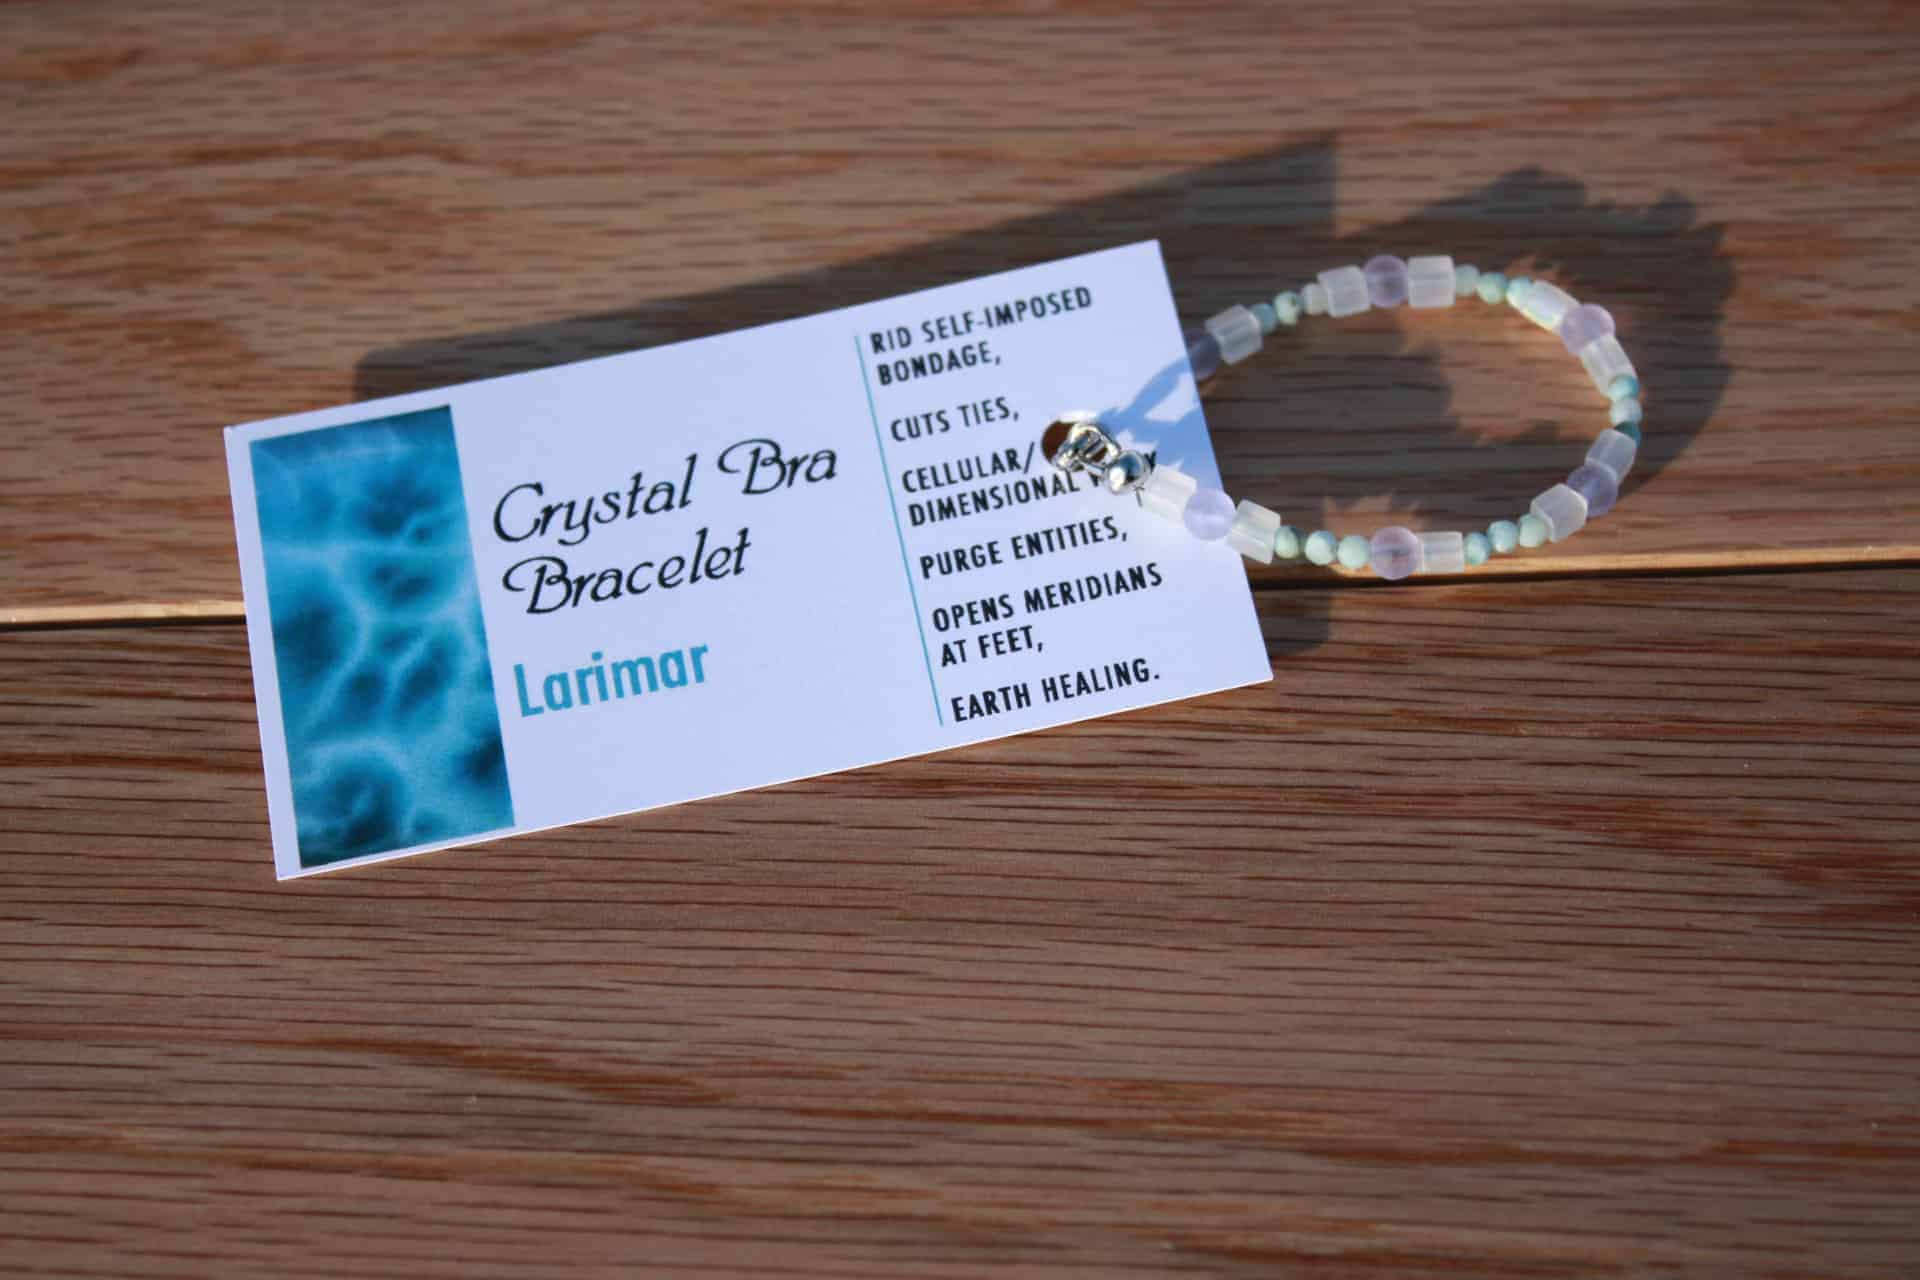 Crystal Bra Bracelets – Gratitude Gem Oils